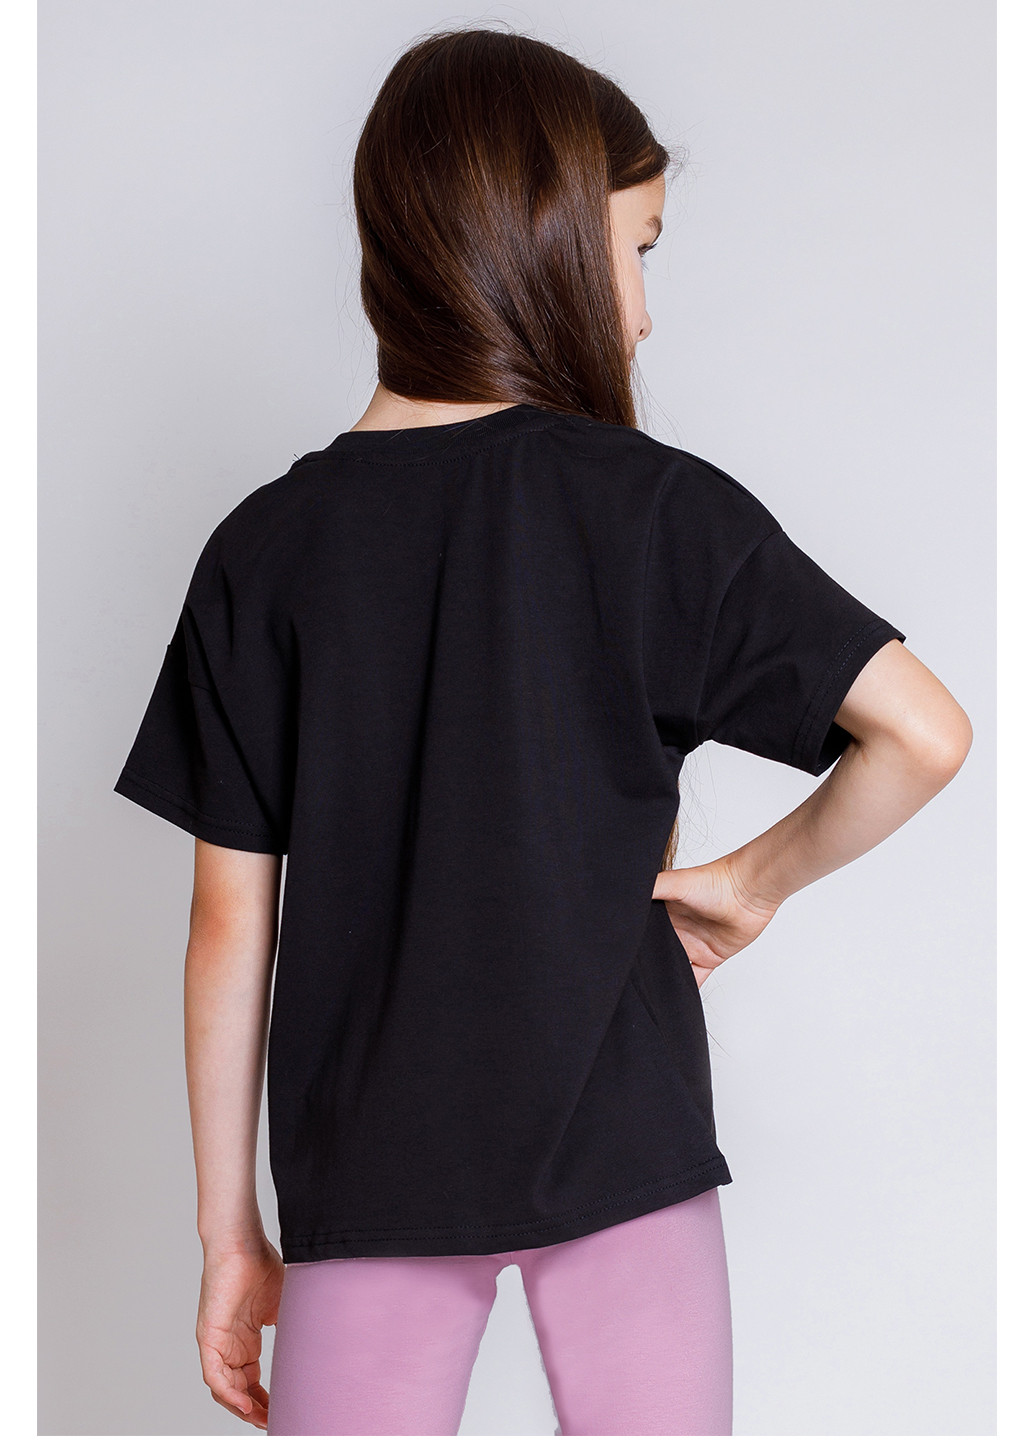 Черная летняя футболка для девочки Kosta 2653-2